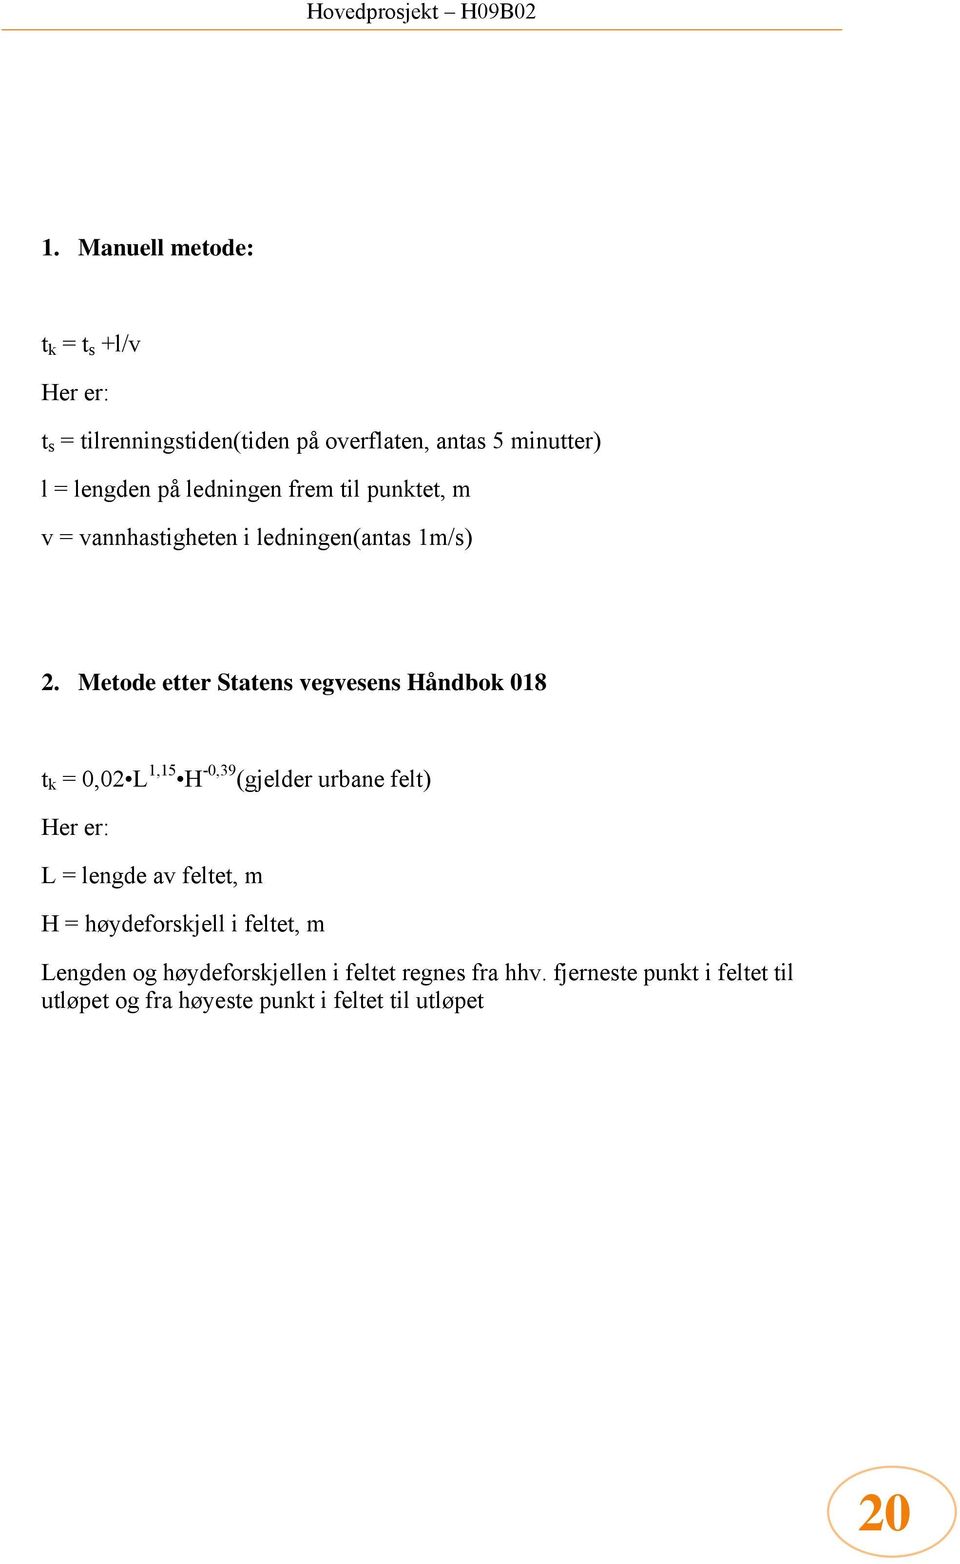 Metode etter Statens vegvesens Håndbok 018 t k = 0,02 L 1,15 H -0,39 (gjelder urbane felt) Her er: L = lengde av feltet,